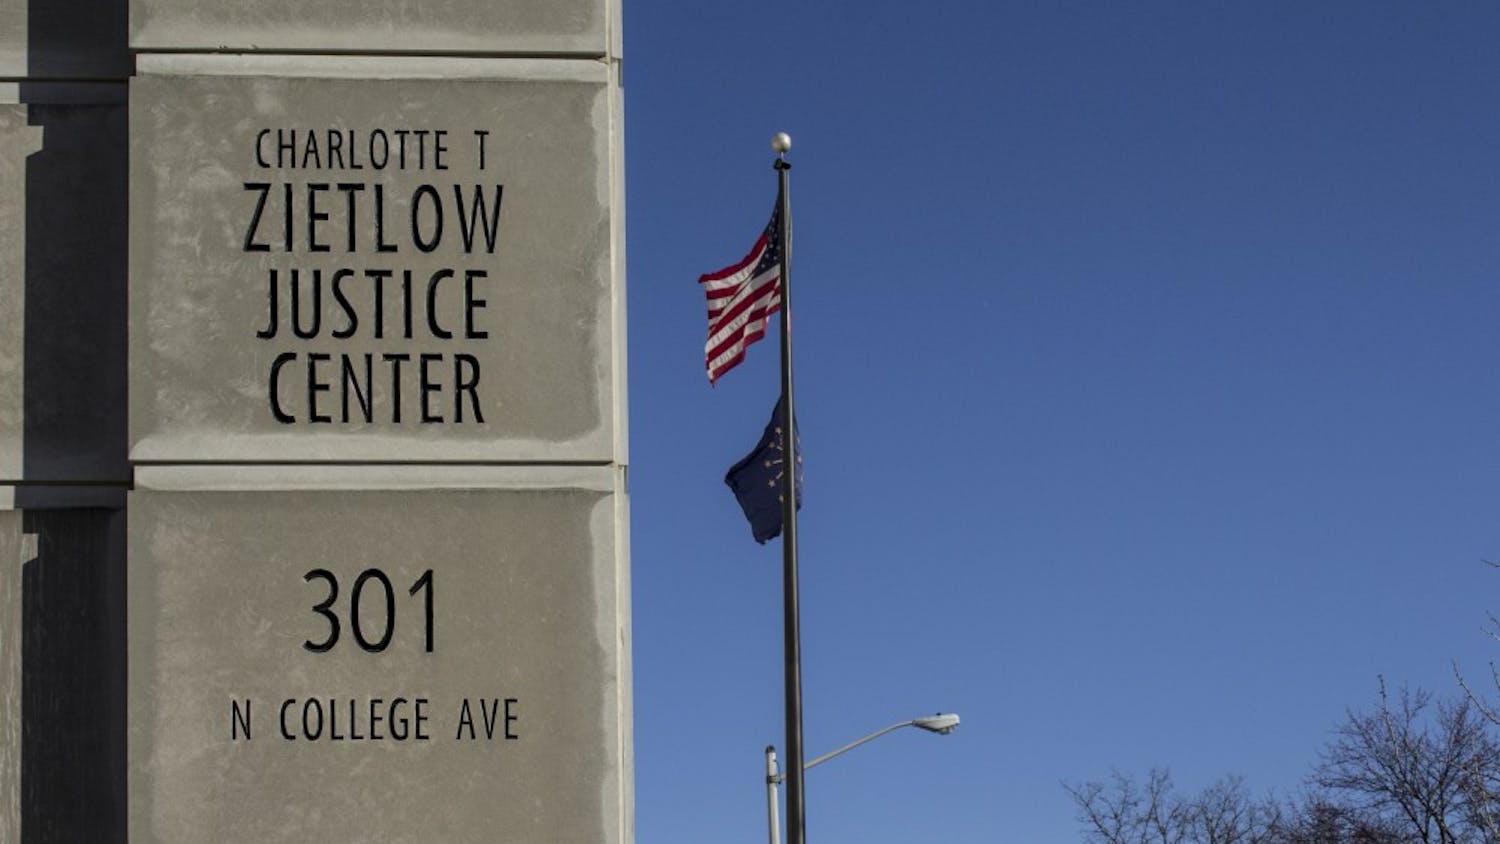 Zietlow Justice Center